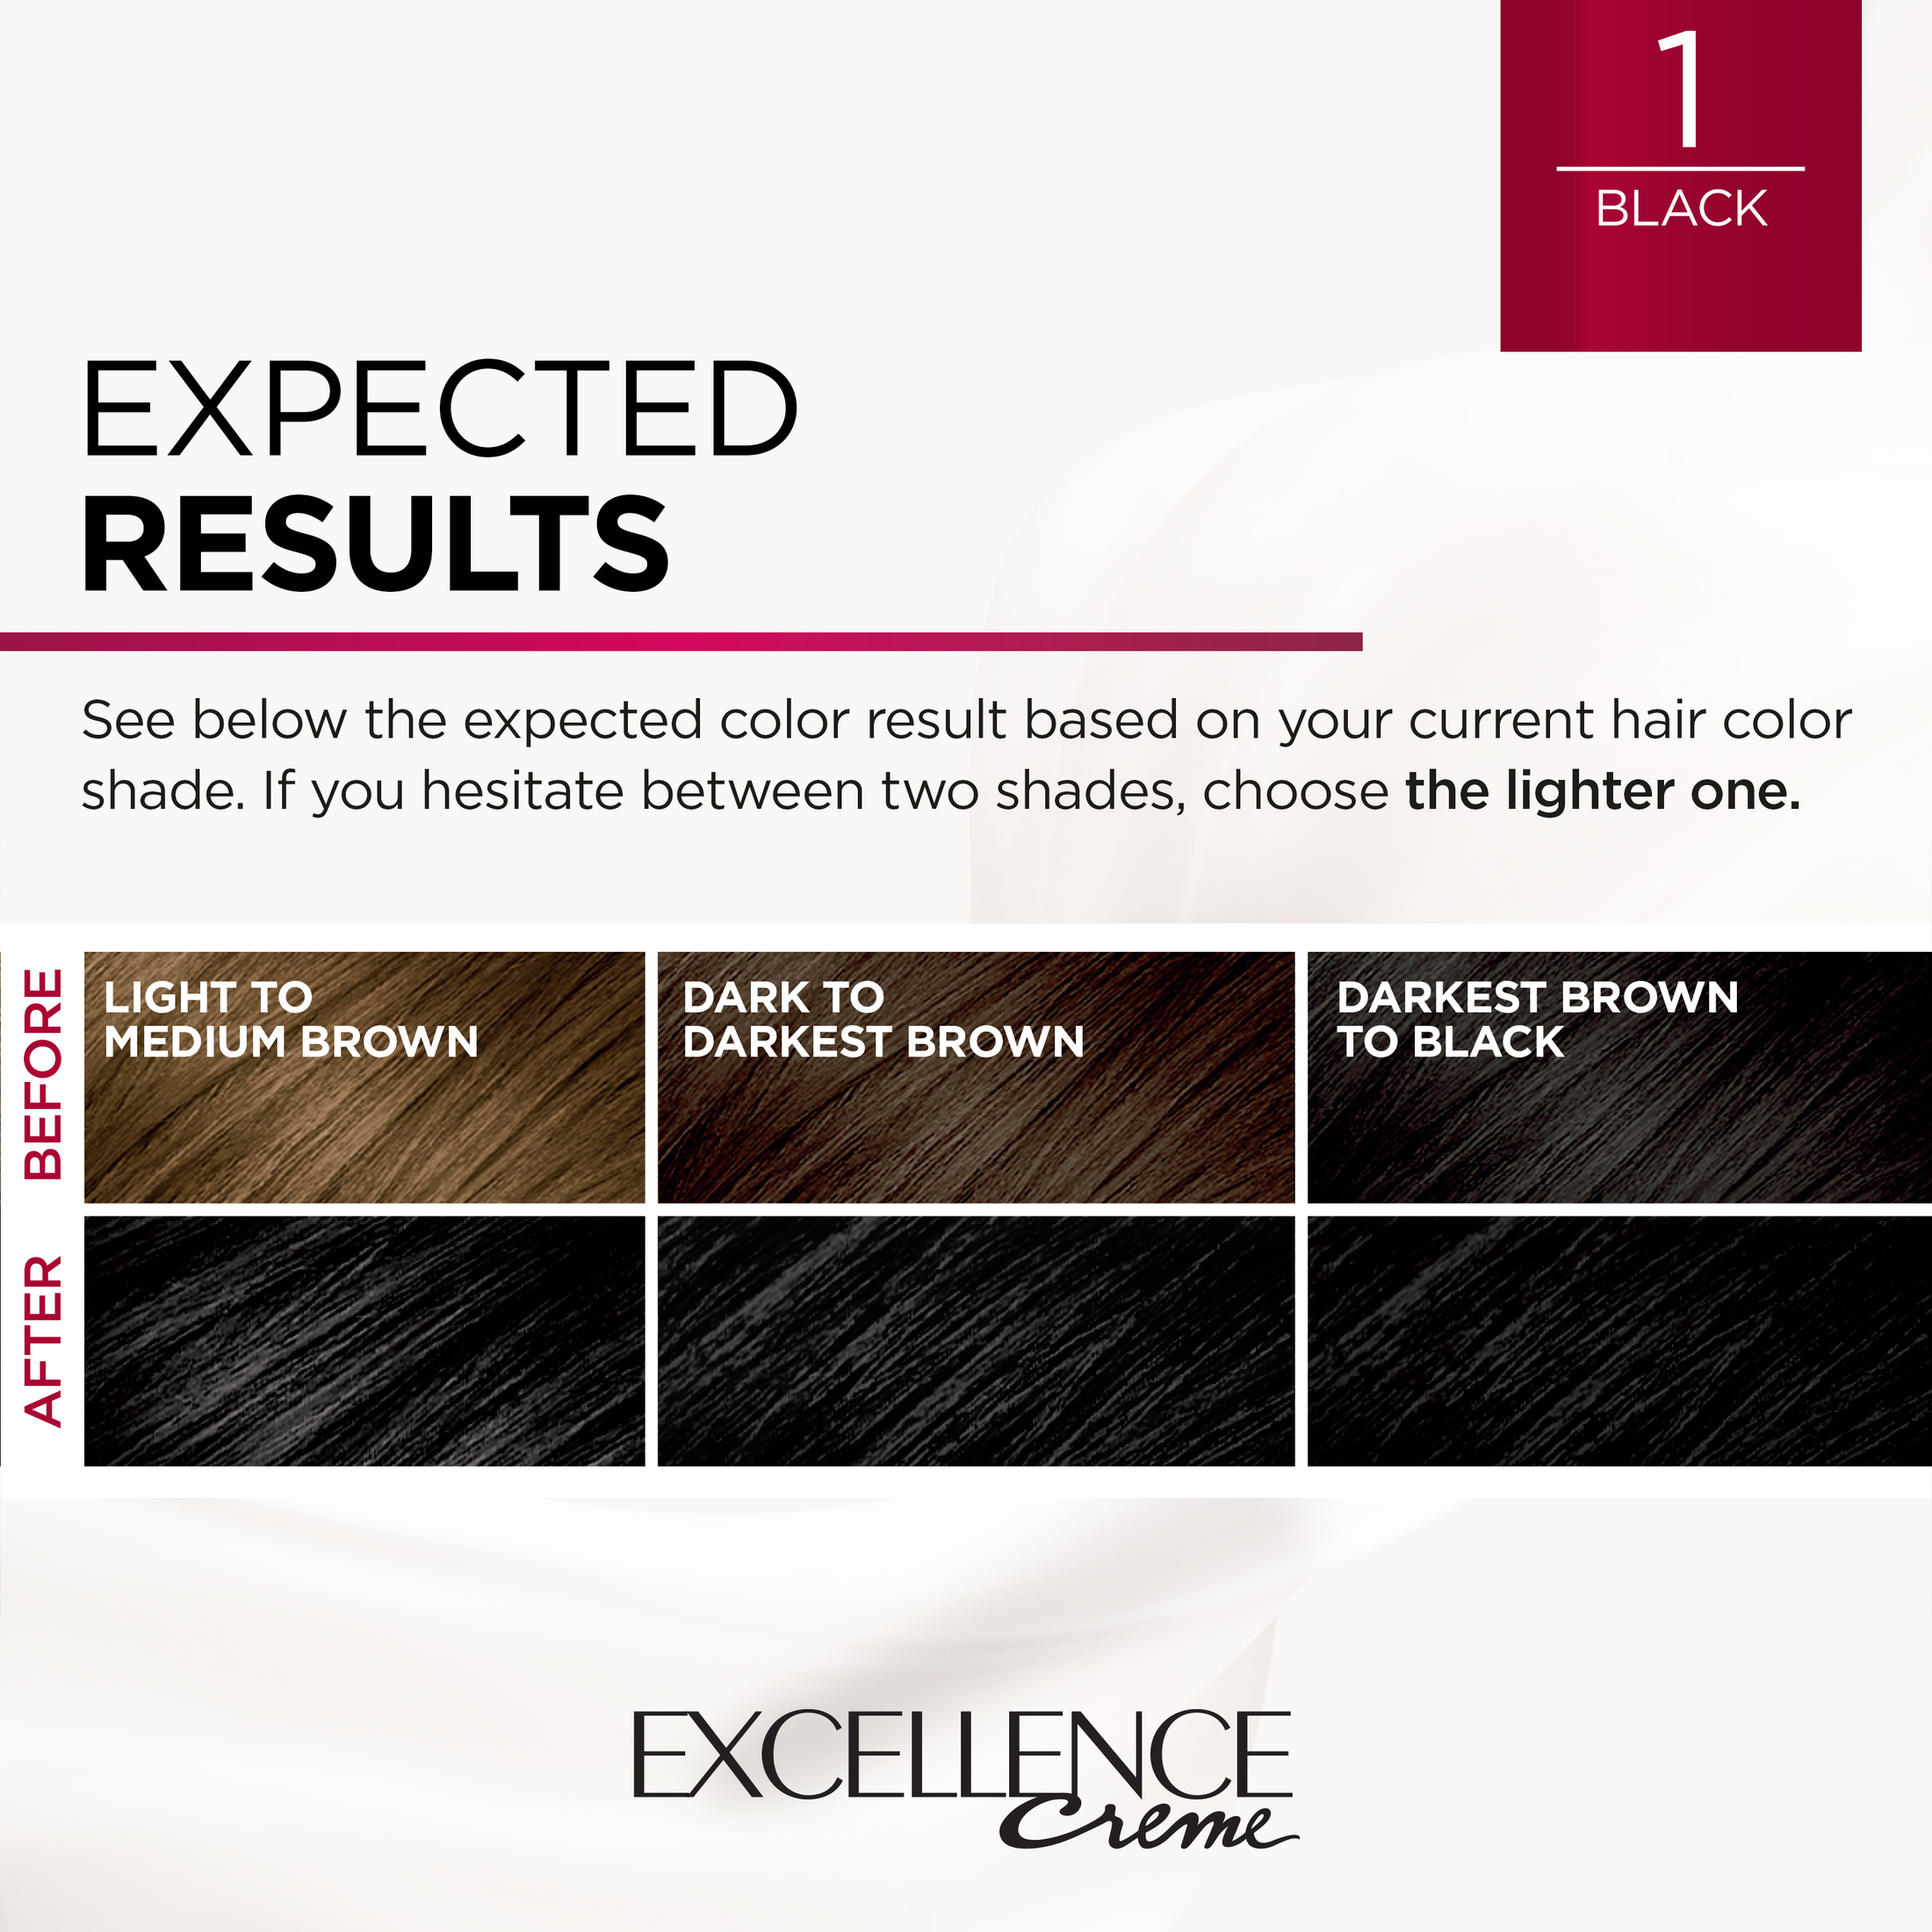 L'Oreal Paris Excellence Creme Permanent Hair Color, 1 Black - image 5 of 8